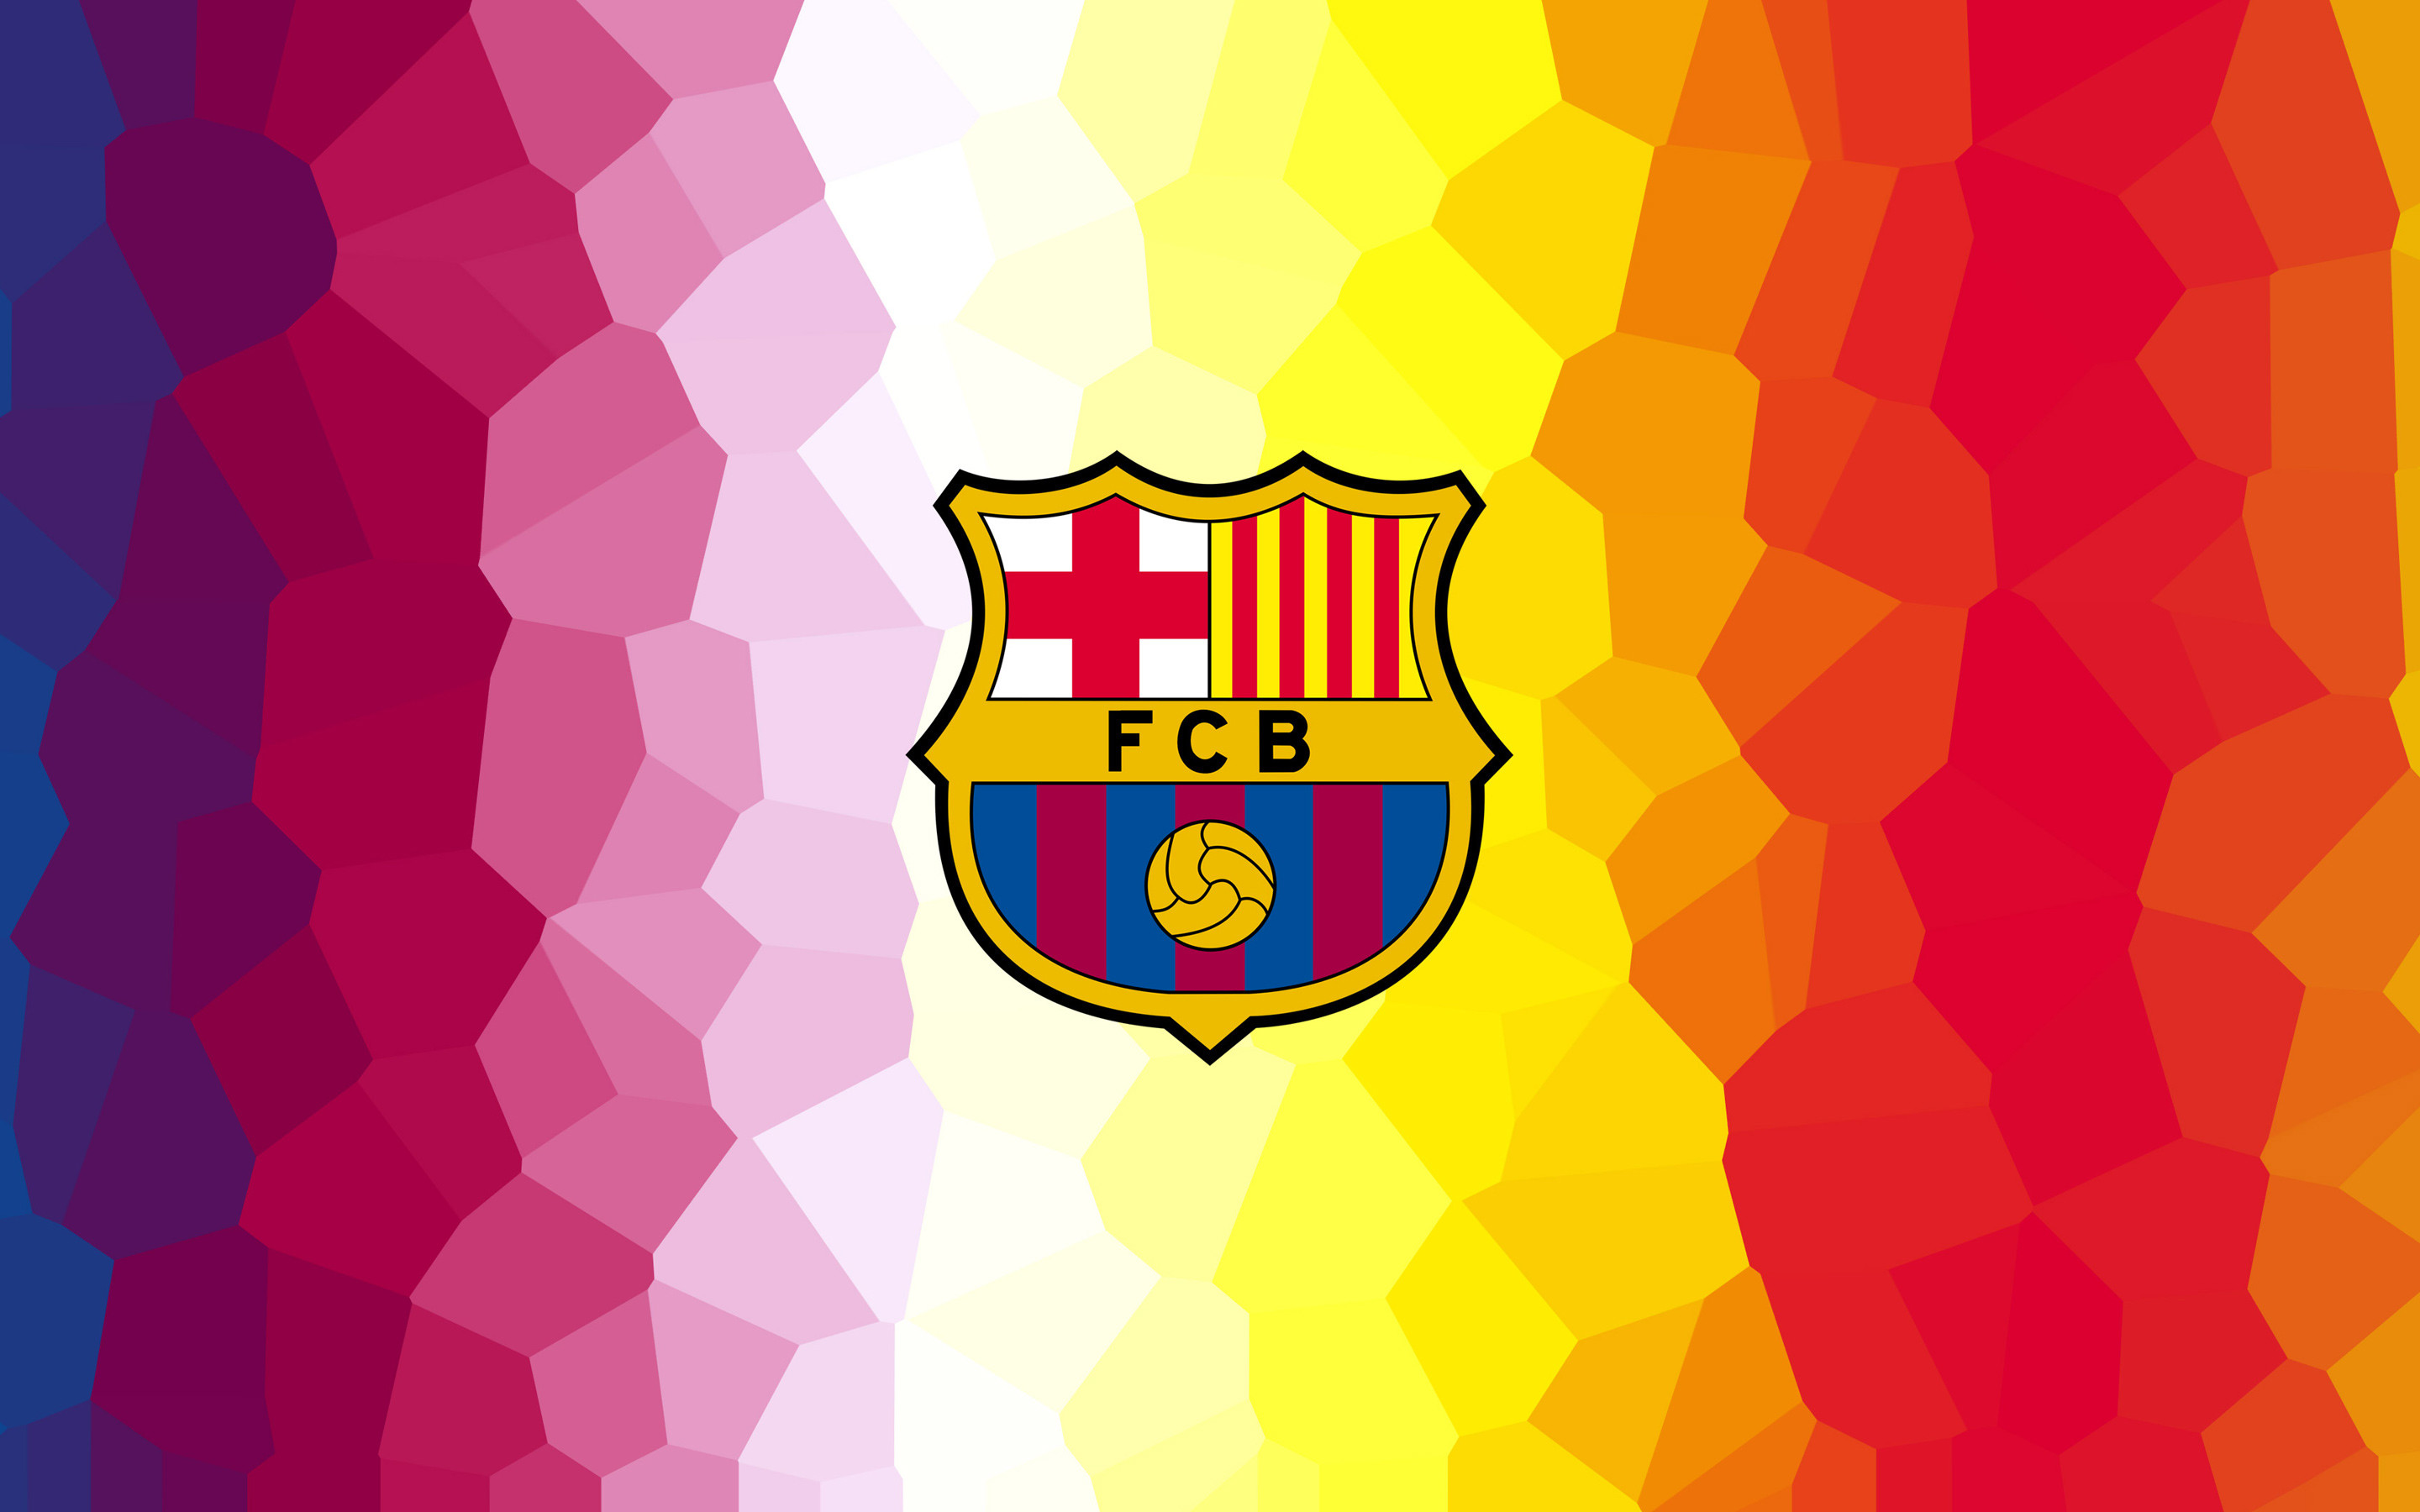 FCB FC Barcelona 4K